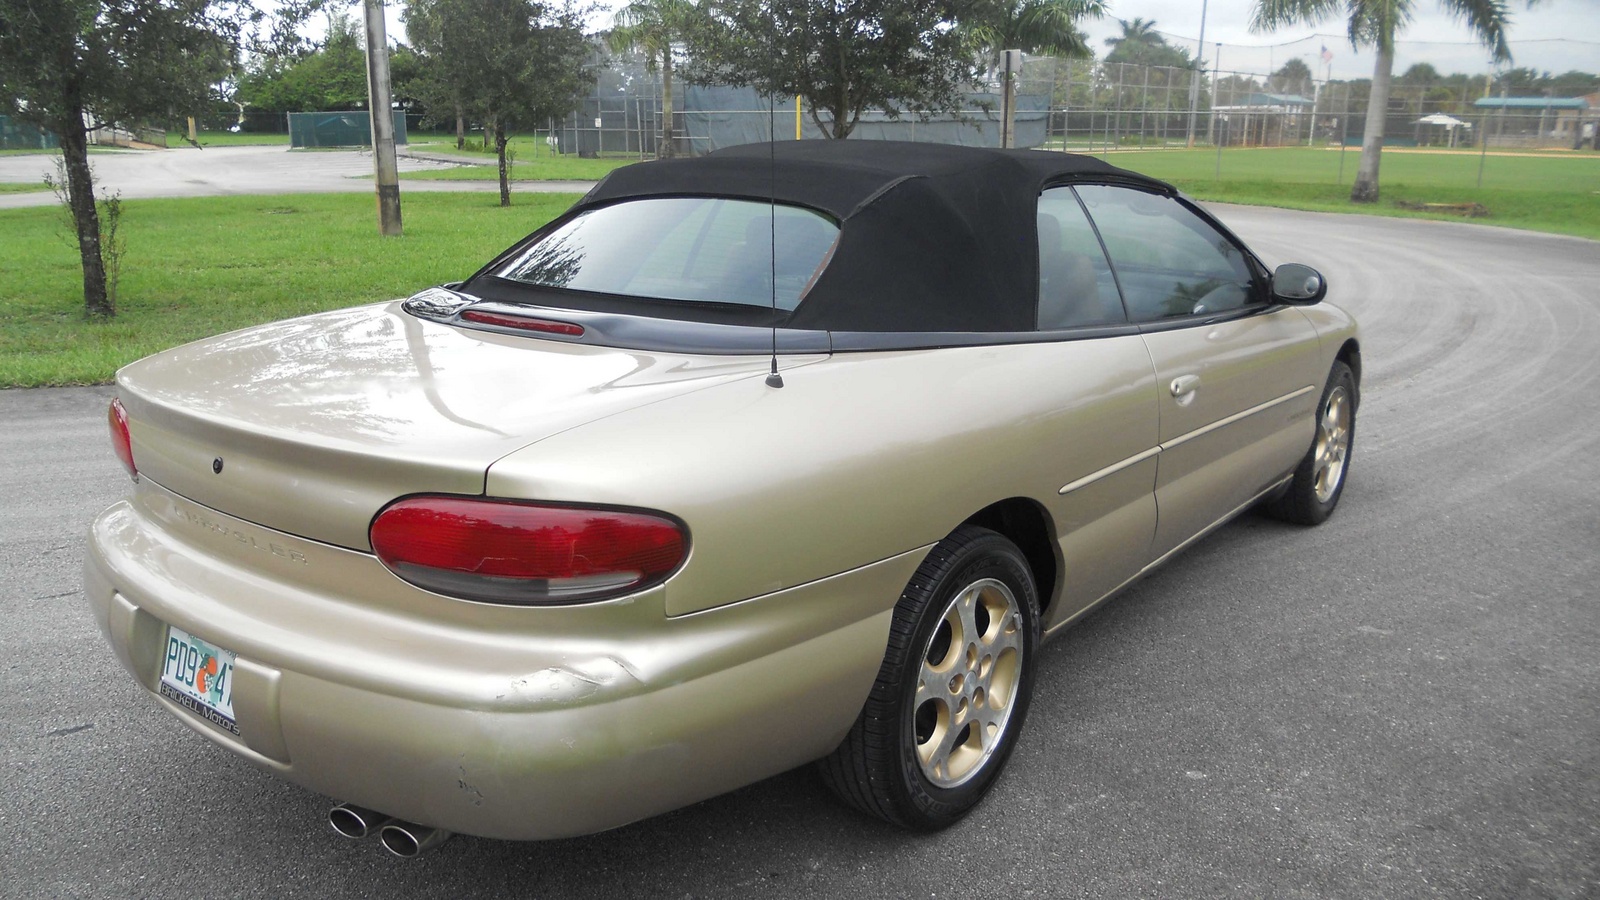 1998 Chrysler sebring seat covers